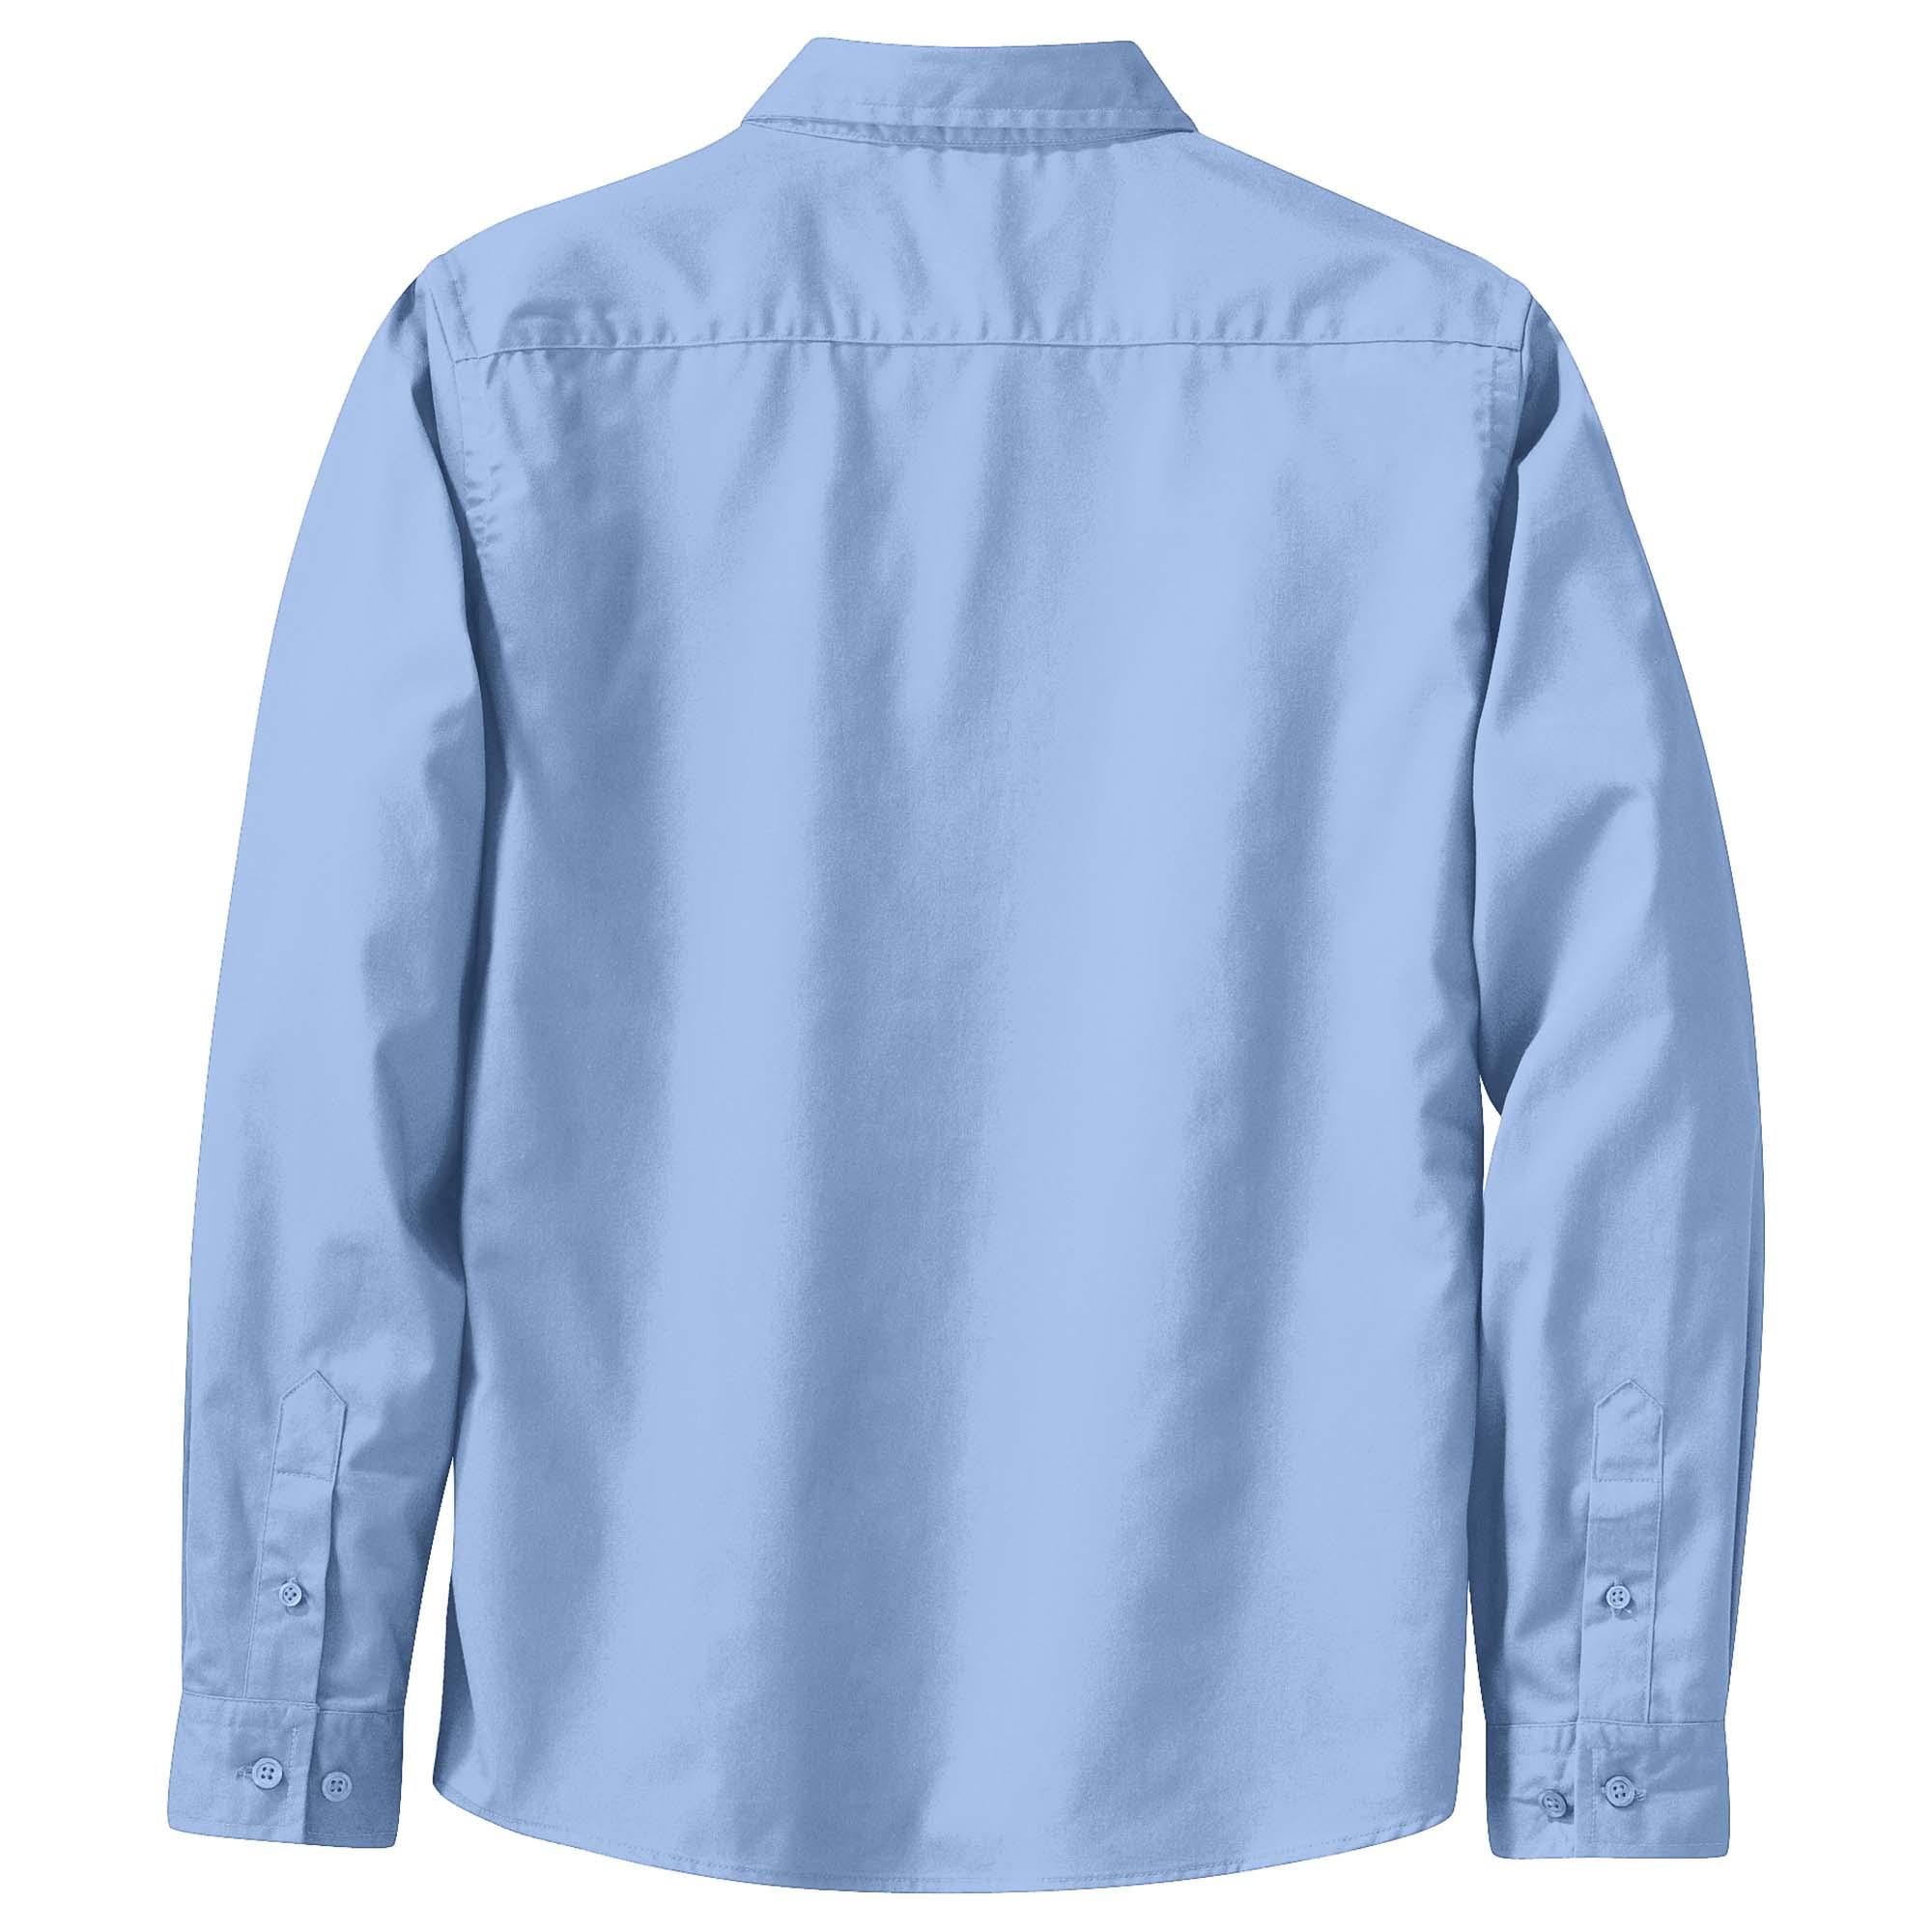 Eddie Bauer EB606 Long Sleeve Fishing Shirt 